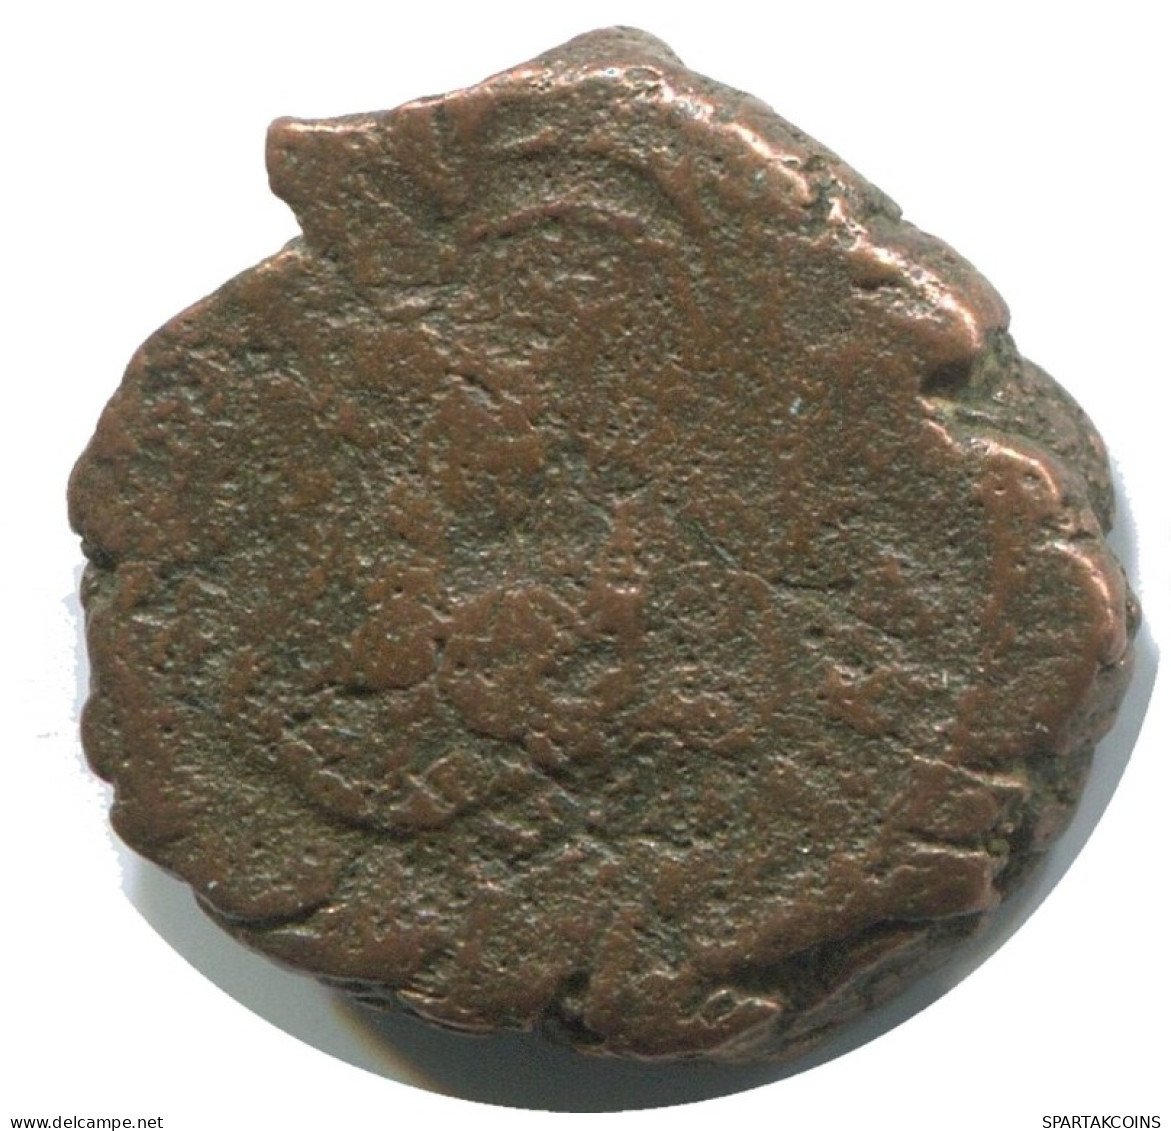 FLAVIUS PETRUS SABBATIUS DECANUMMI Ancient BYZANTINE Coin 3.1g/16mm #AB412.9.U.A - Bizantine